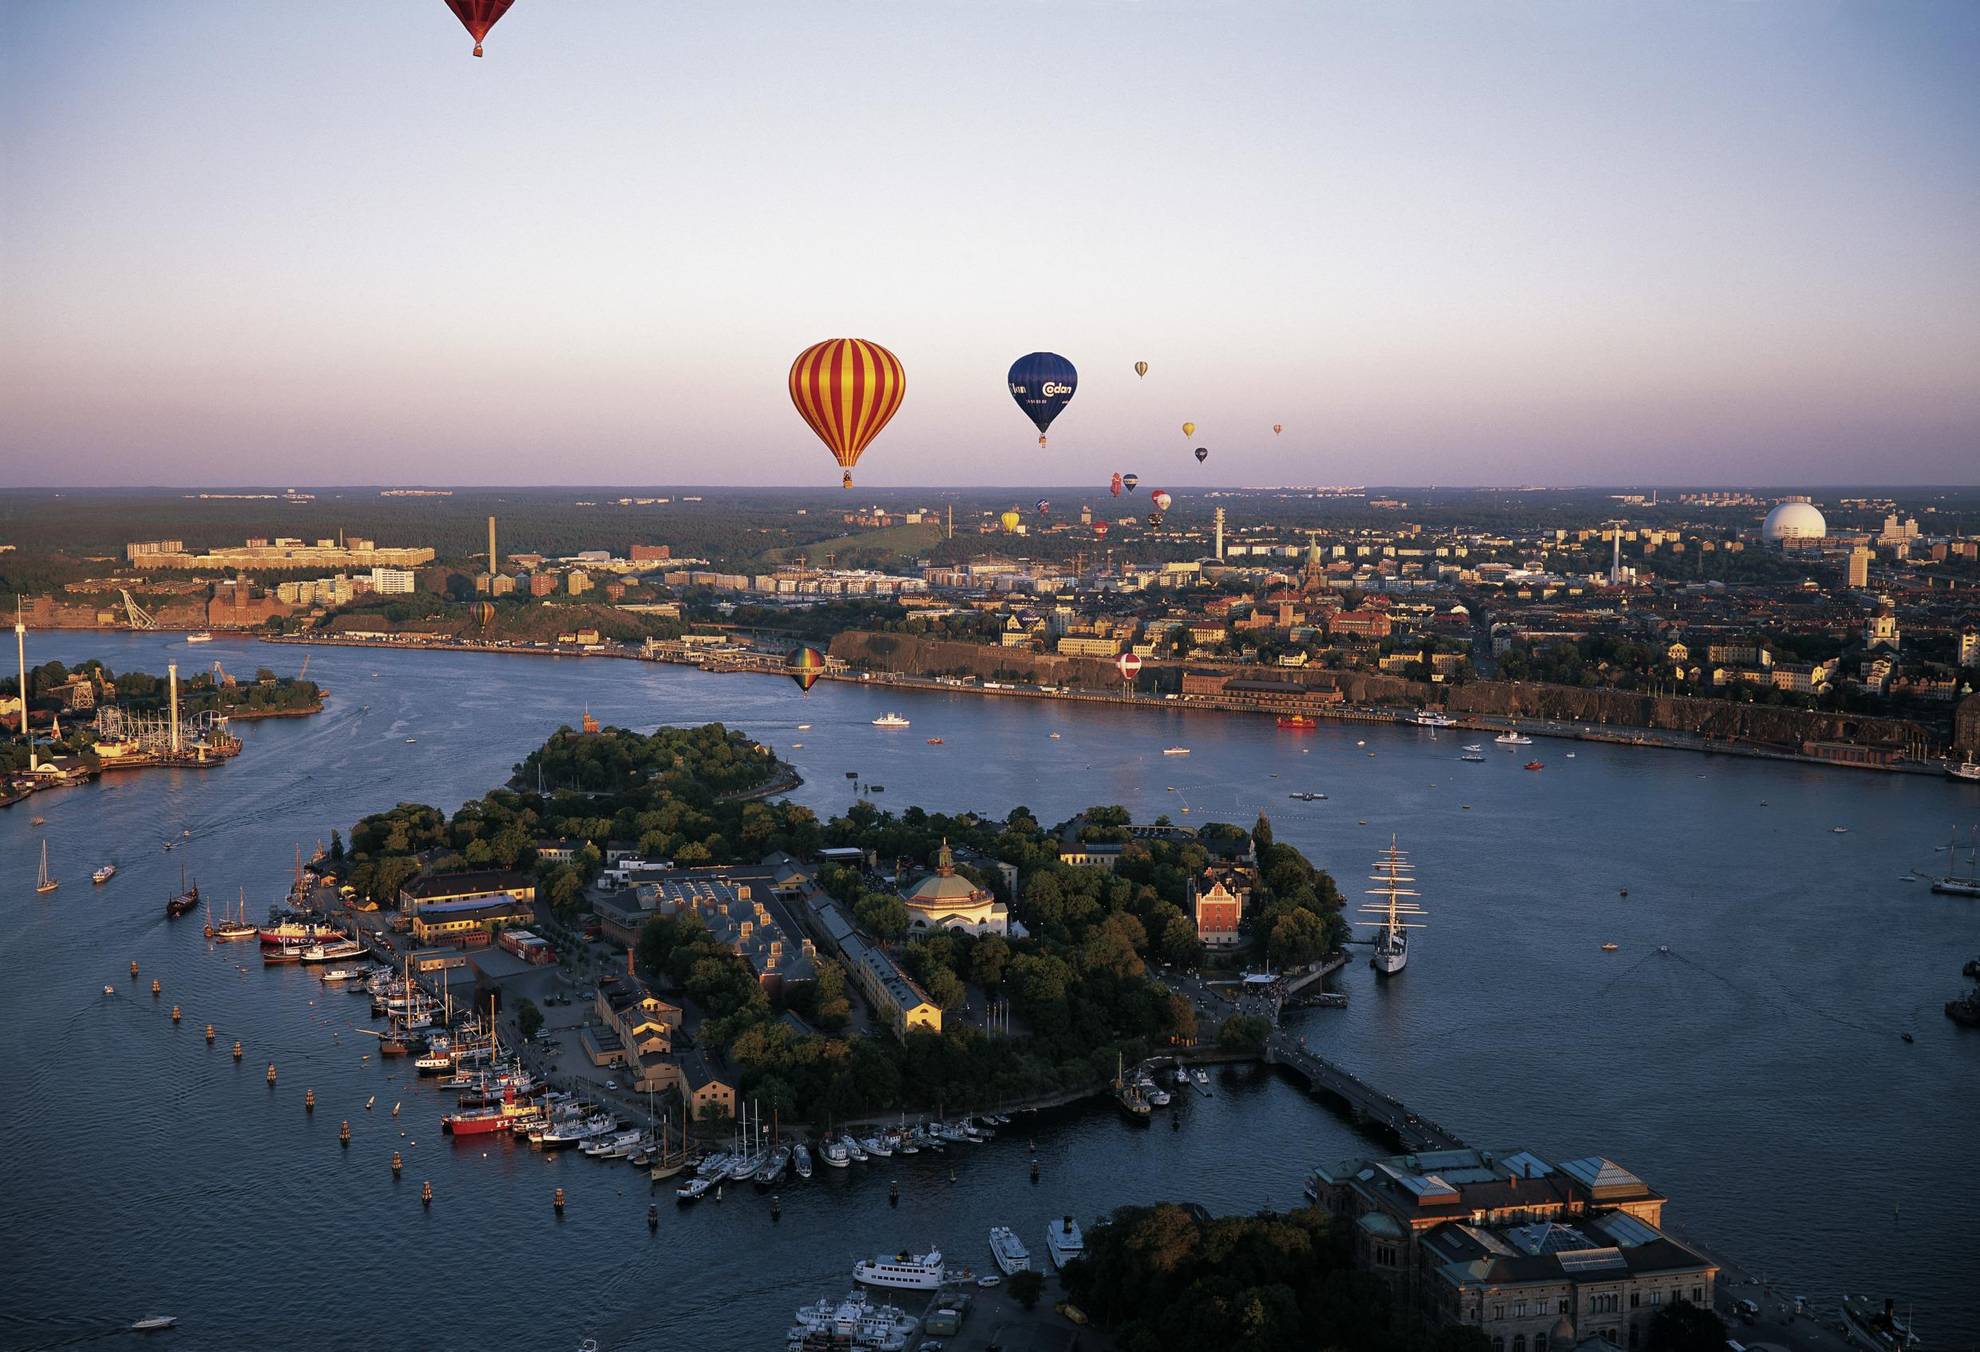 Des montgolfières de différentes couleurs volent au-dessus de Stockholm lors d'une soirée d'été.